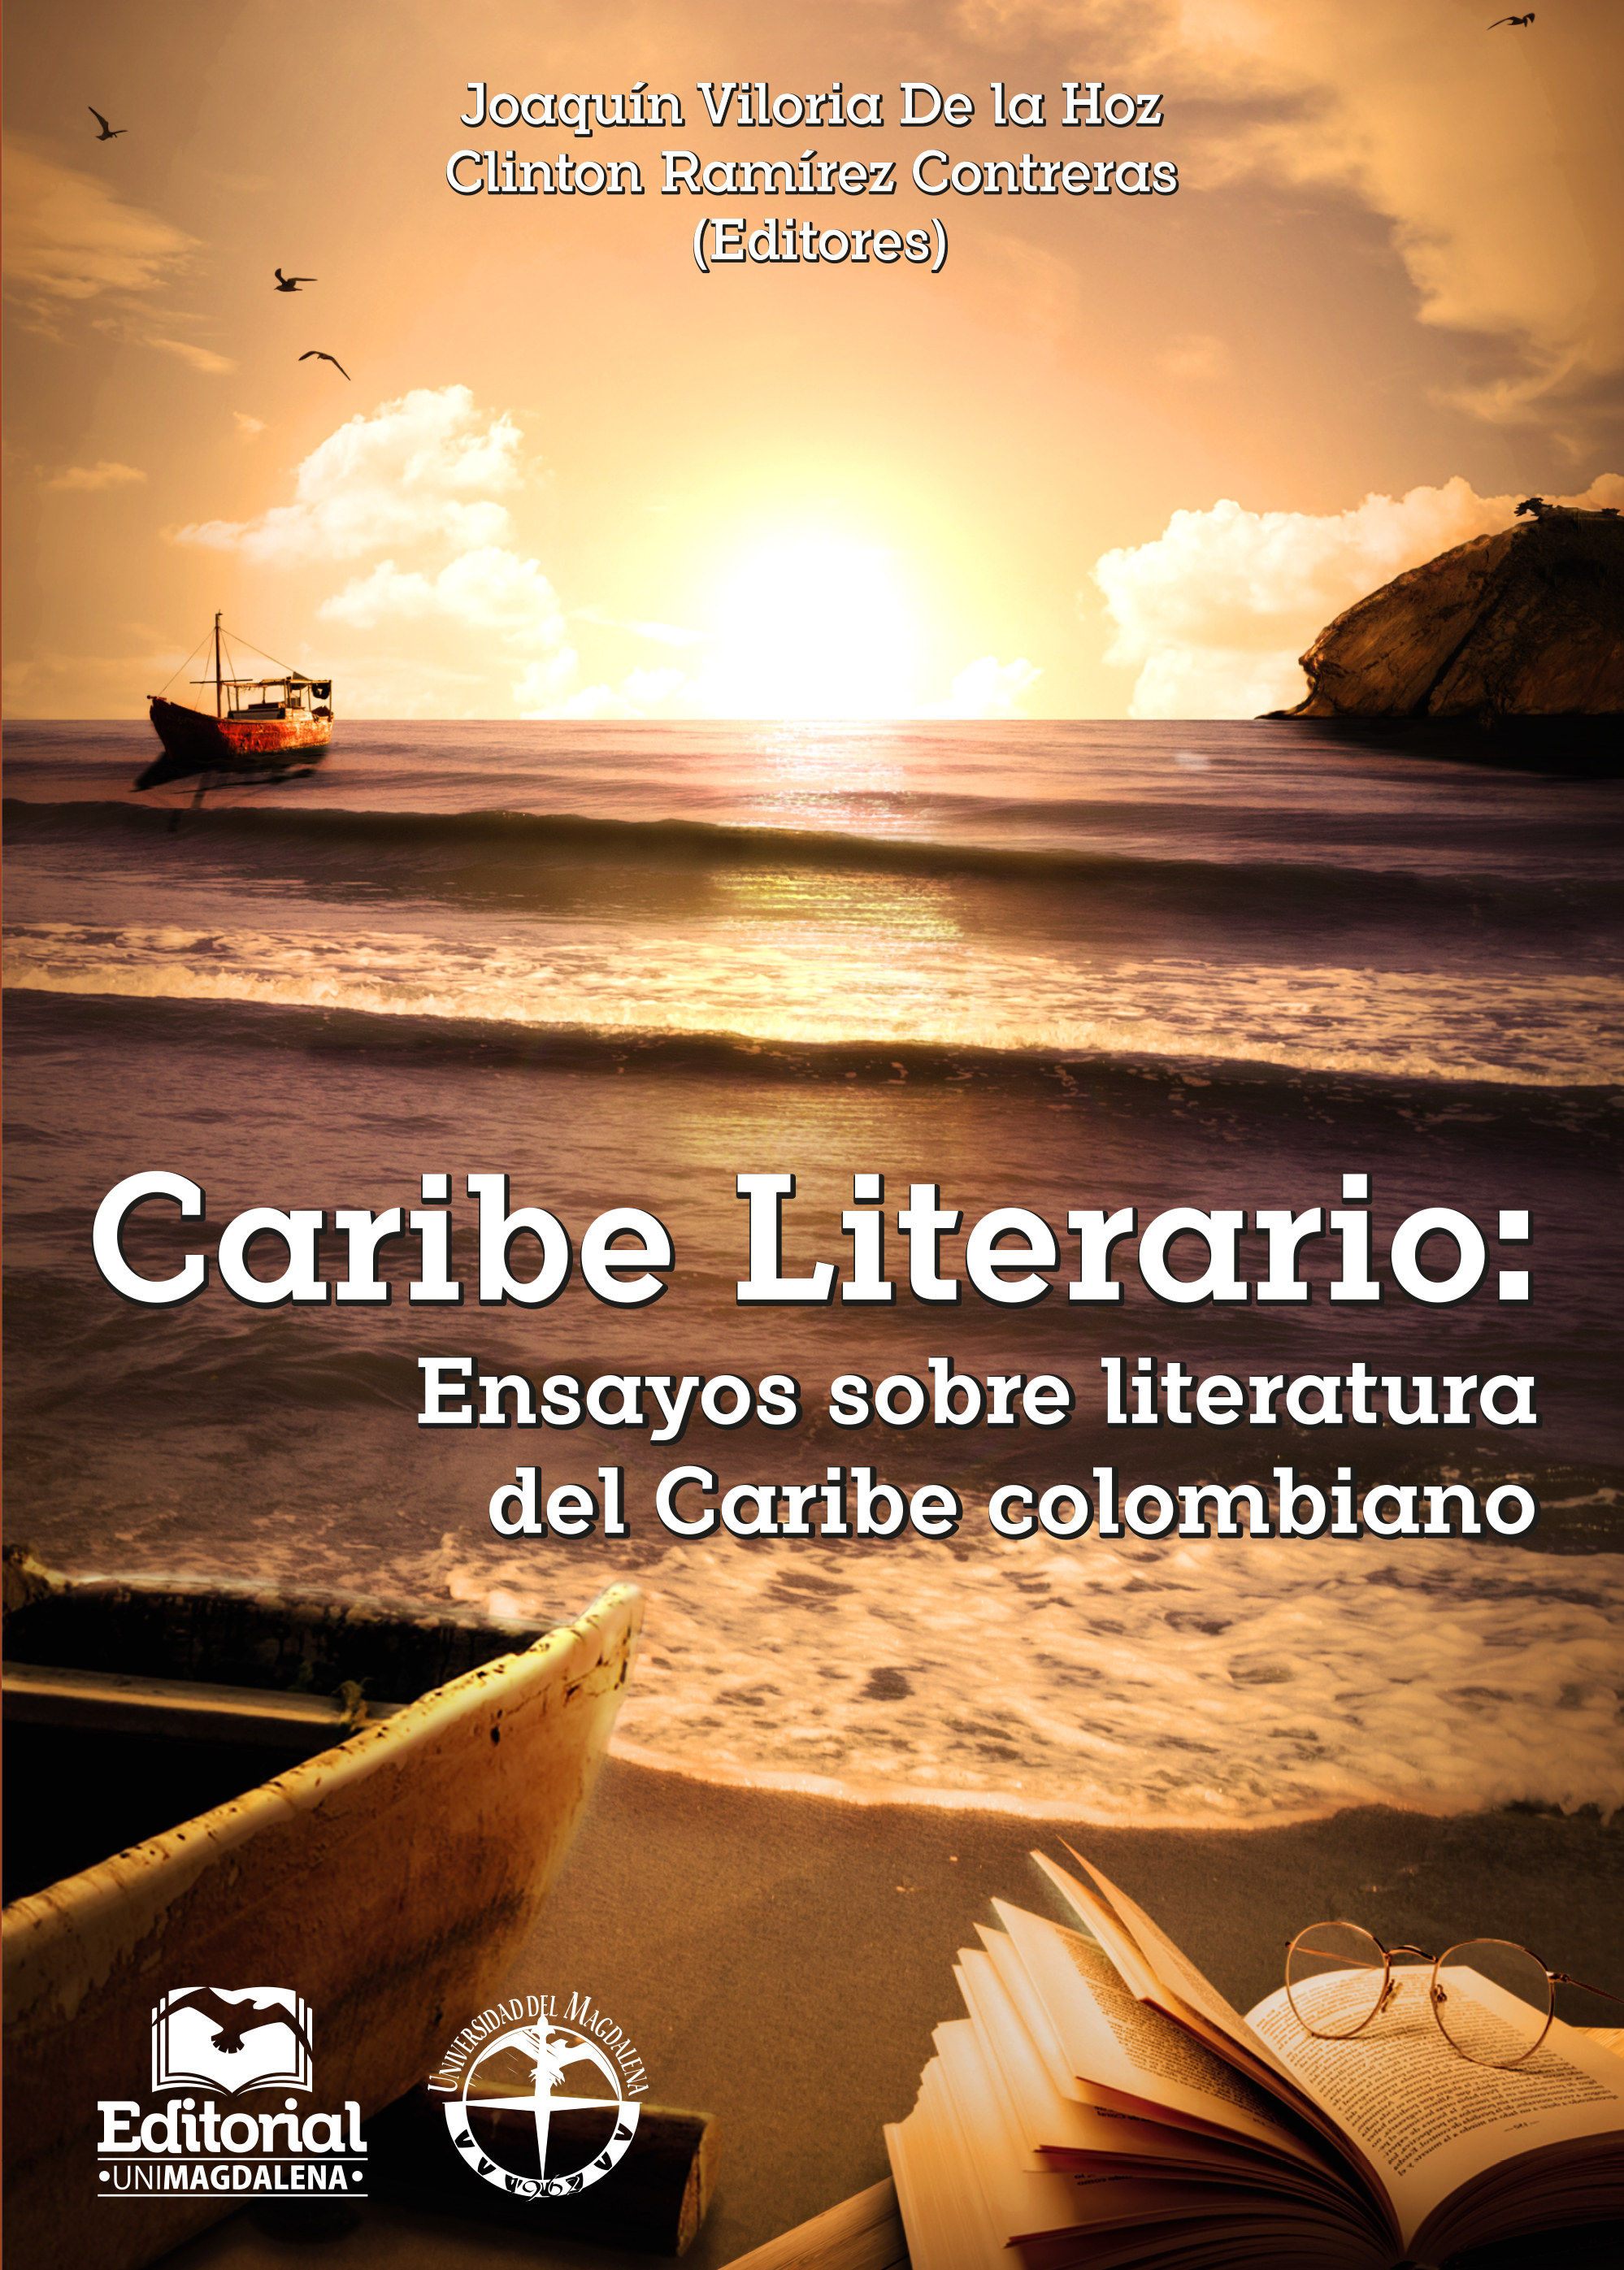 Caribe literario: Ensayos sobre literatura del Caribe colombiano